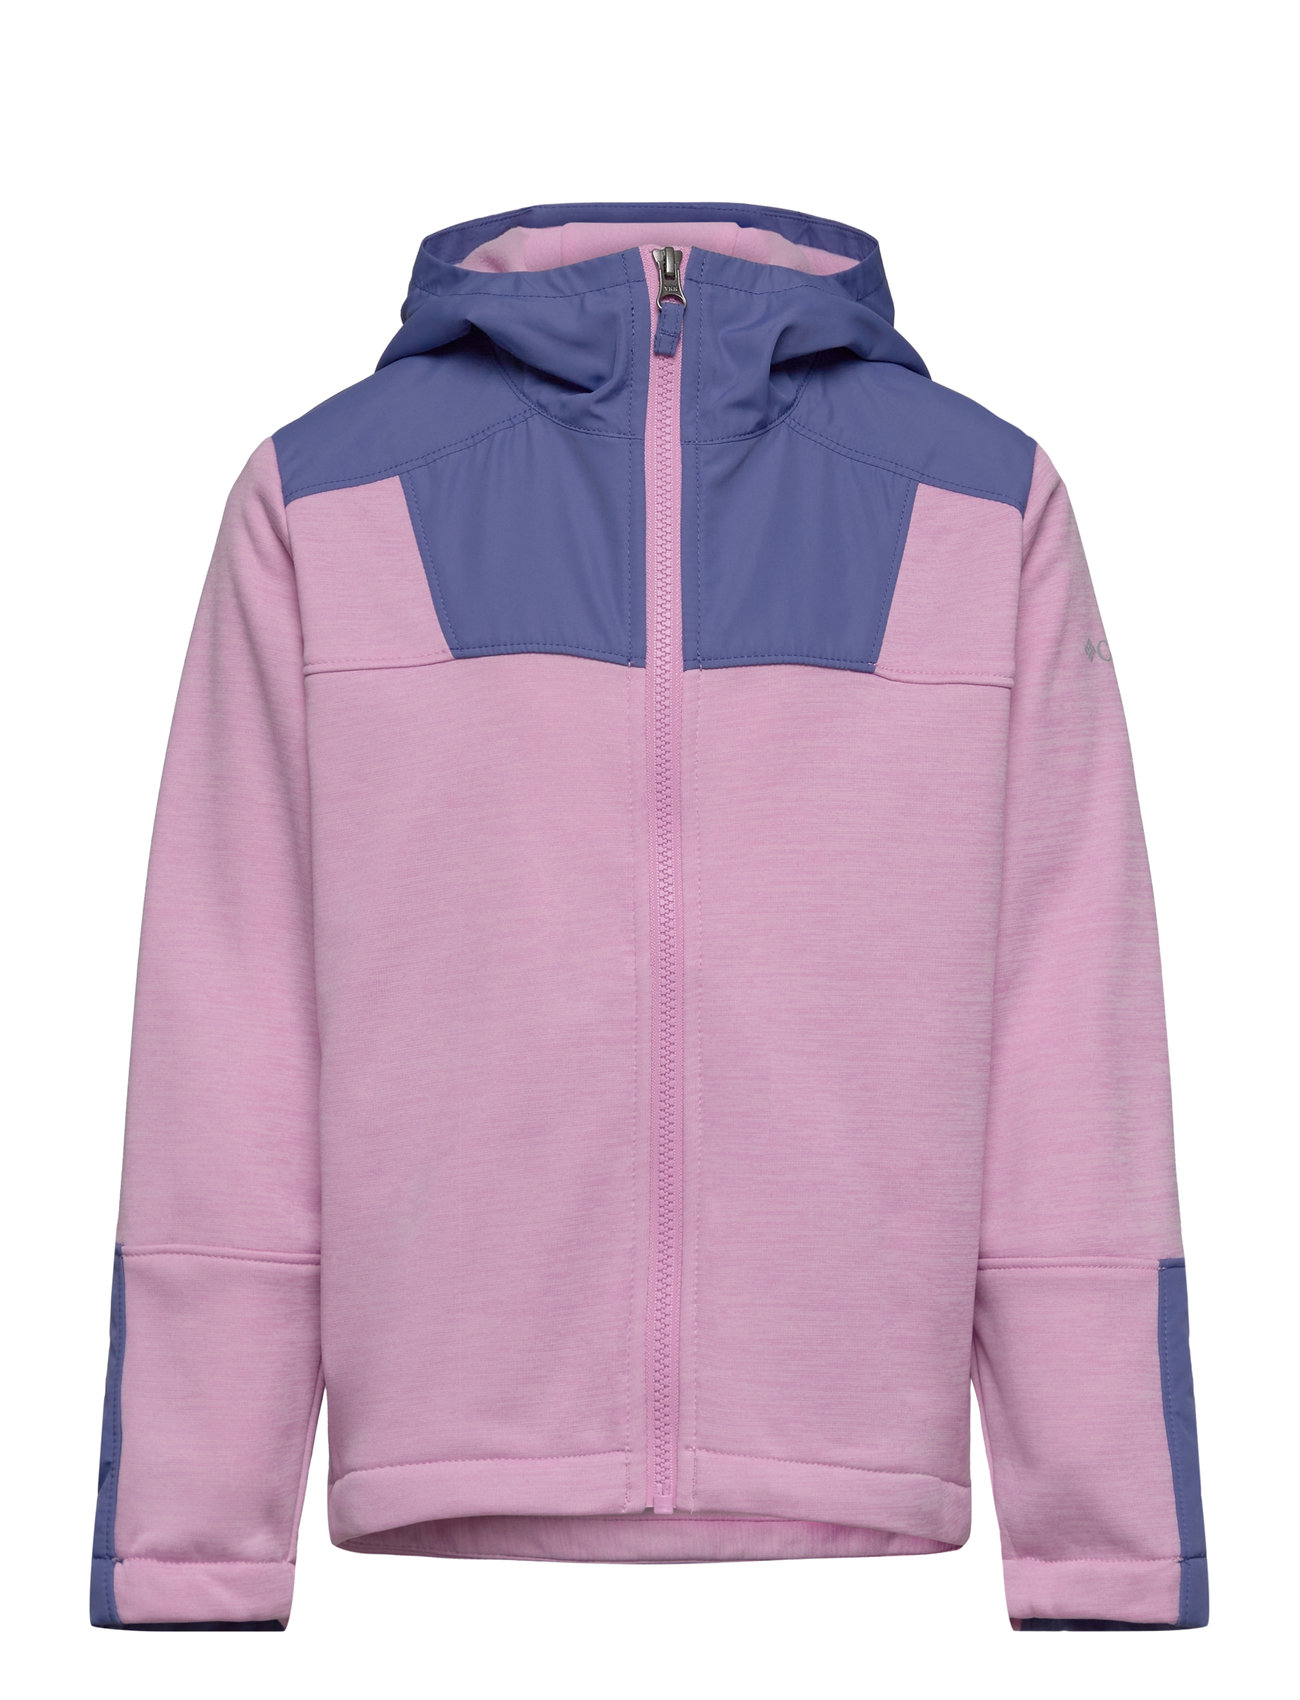 Out-Shield Ii Dry Fleece Full Zip Sport Fleece Outerwear Fleece Jackets Purple Columbia Sportswear